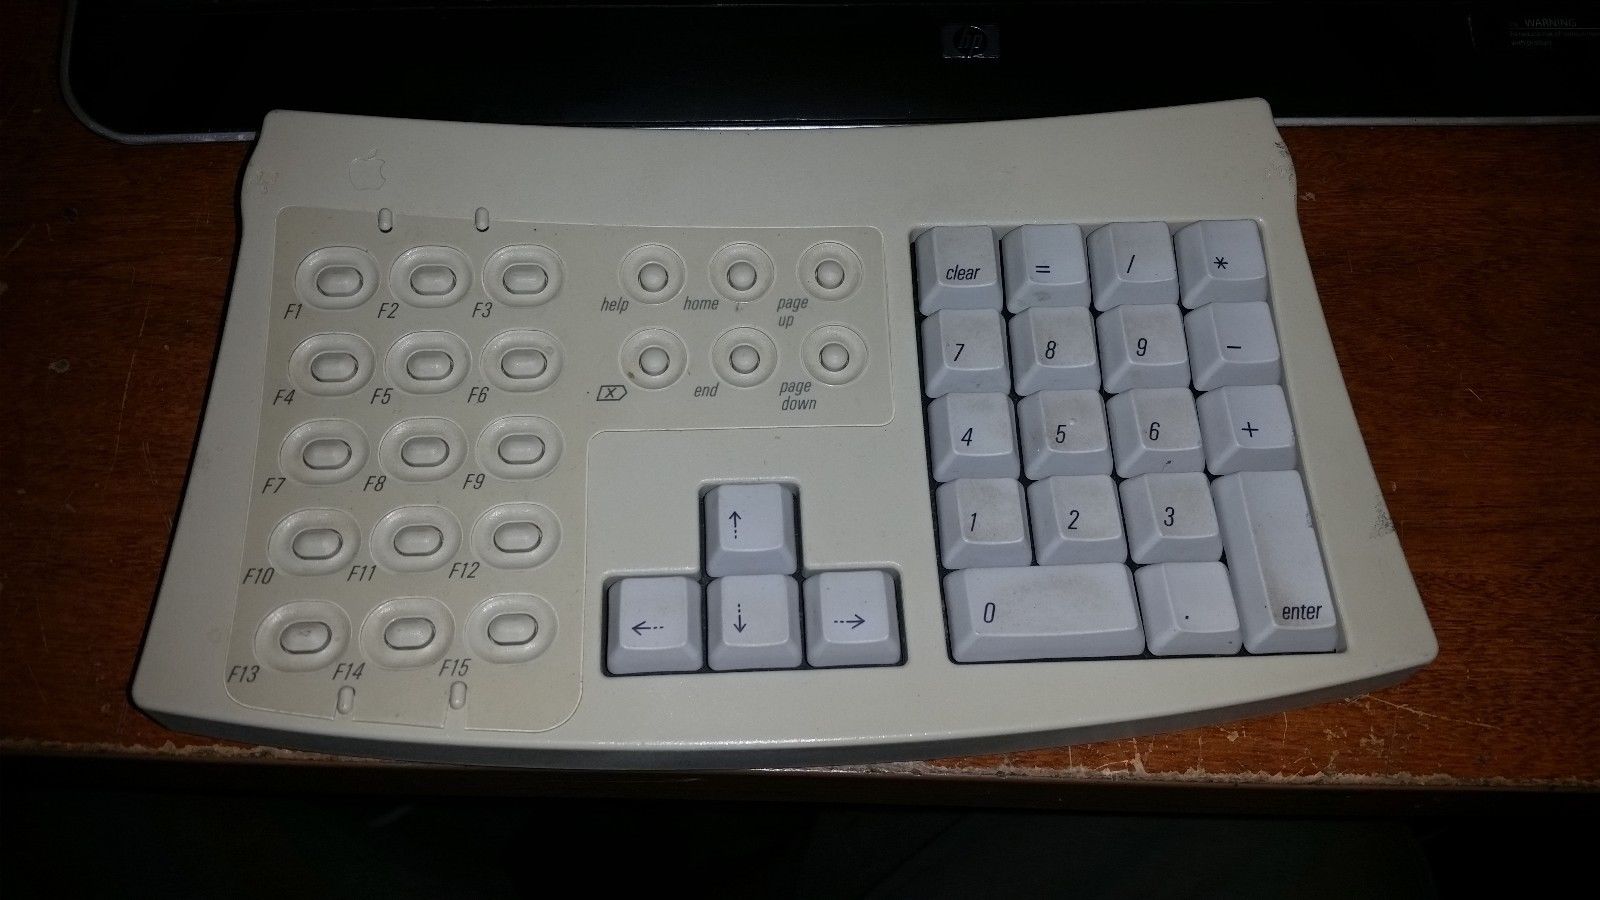 apple adjustable keyboard m1242  03445